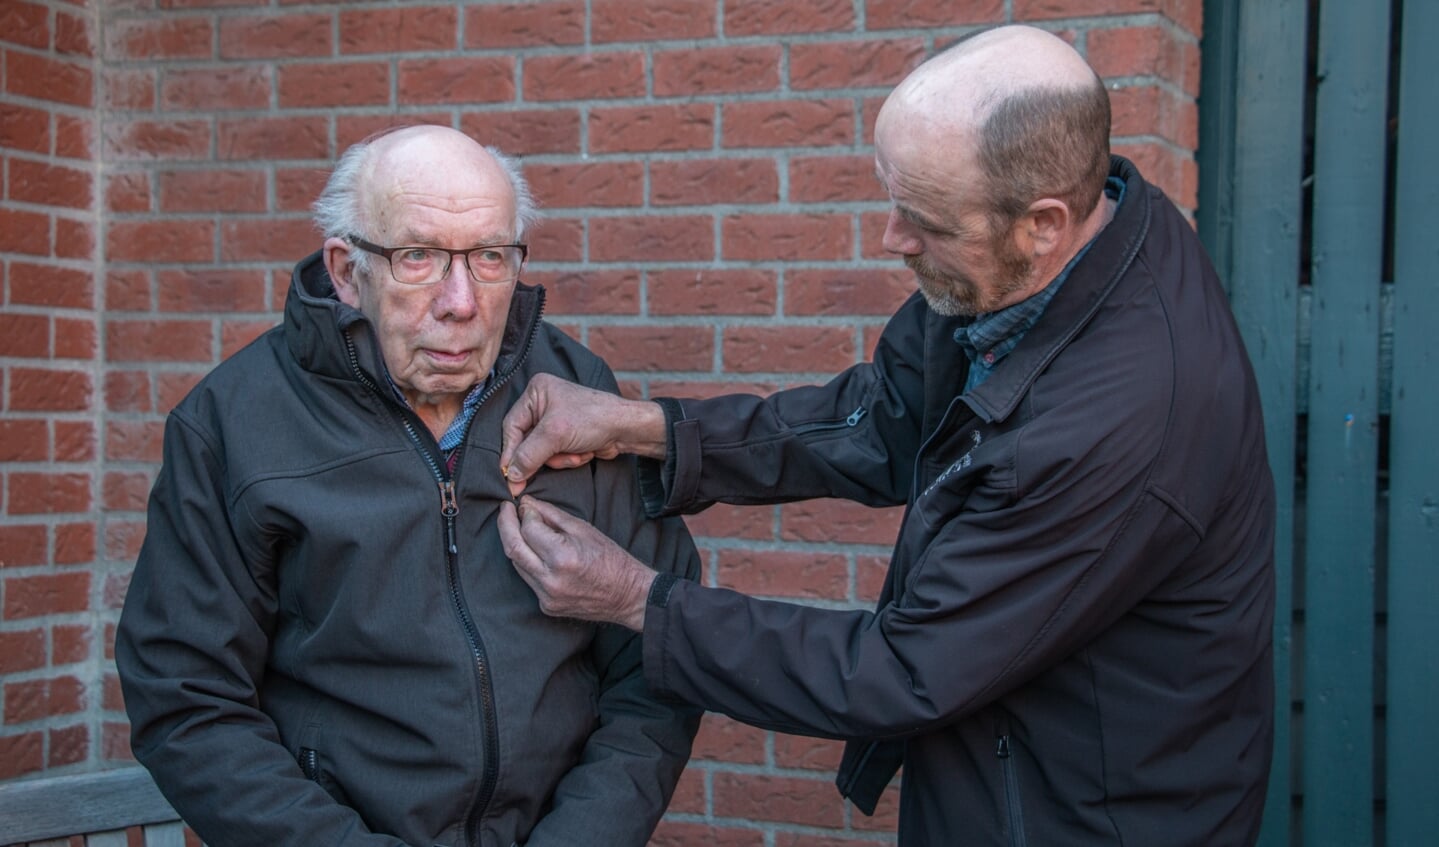 Gerrit Teunissen krijgt via zoon Lammert een speld op zijn jas voor zijn 70-jarig lidmaatschap van muziekvereniging Hummelo en Keppel. Foto: Liesbeth Spaansen